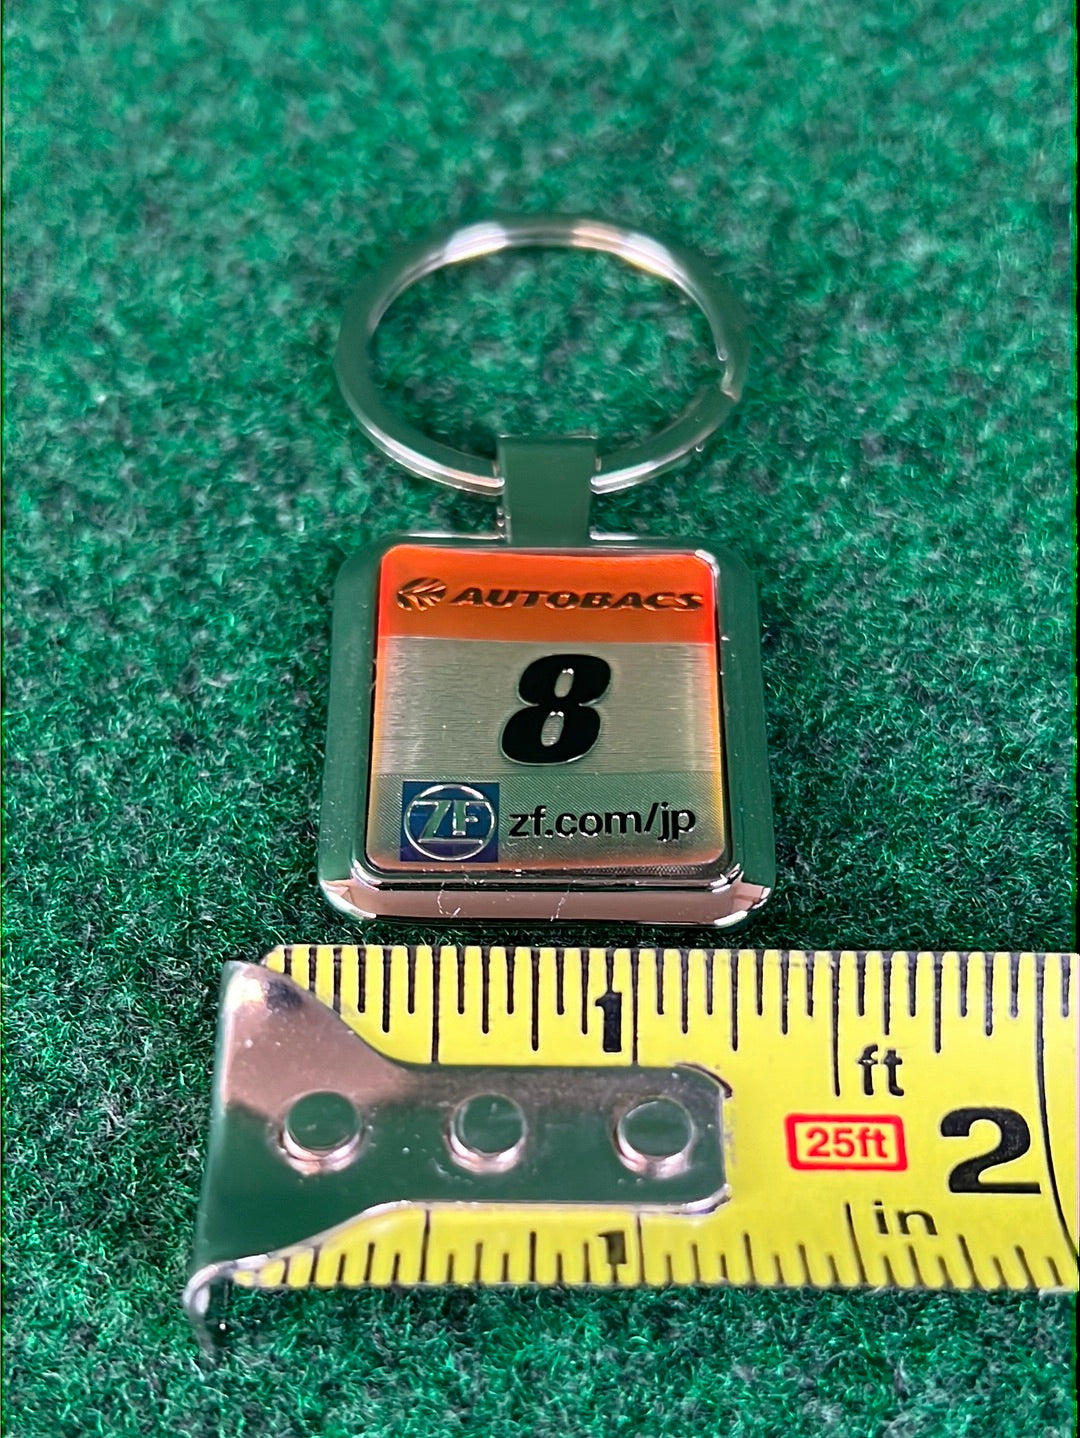 Autobacs ARTA Super GT #8 Keychain